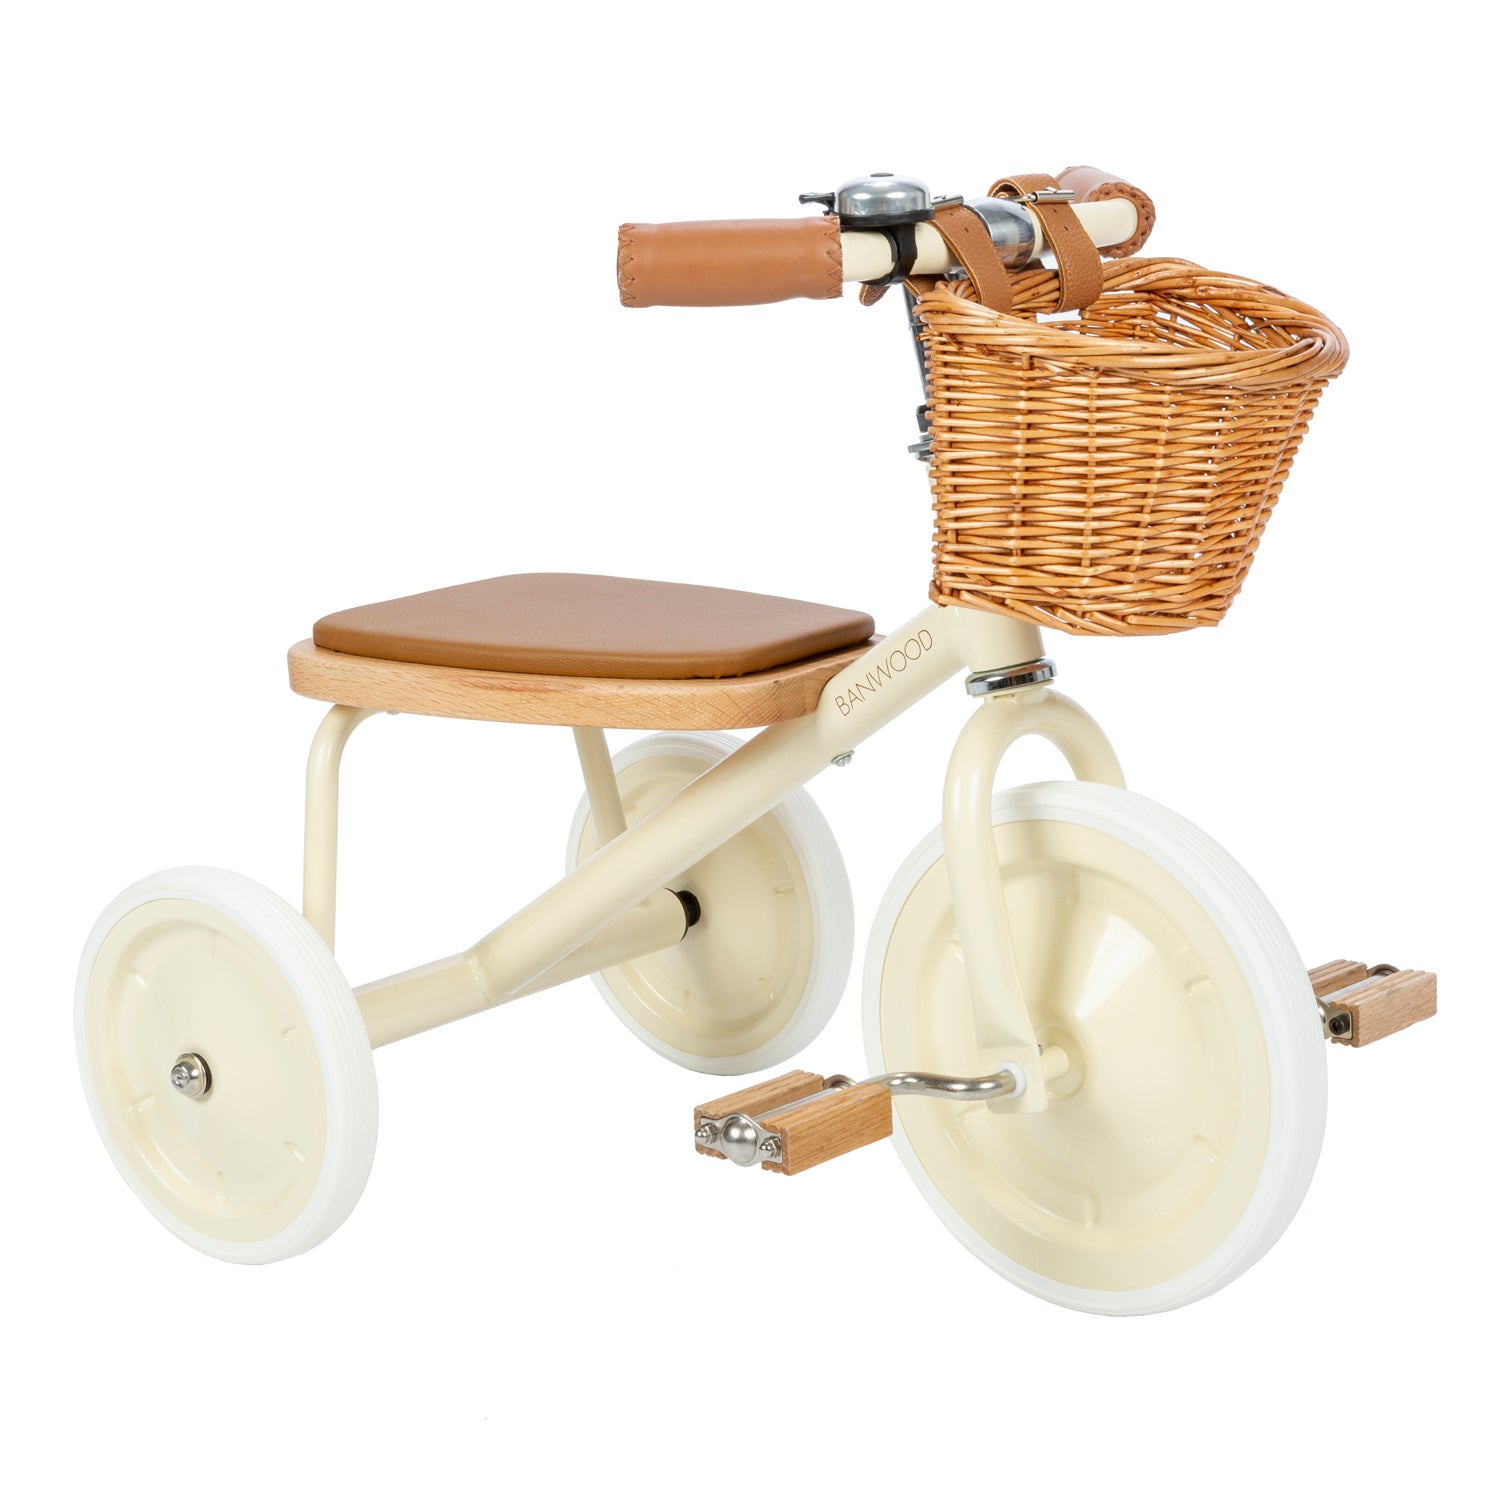 Deze leuke Banwood driewieler in vintage cream is een superleuke kinderfiets met een retro design. Met deze fiets kunnen zelfs de allerkleinsten mee op een fietstochtje. Deze fiets is namelijk geschikt voor kinderen vanaf 2 jaar. VanZus